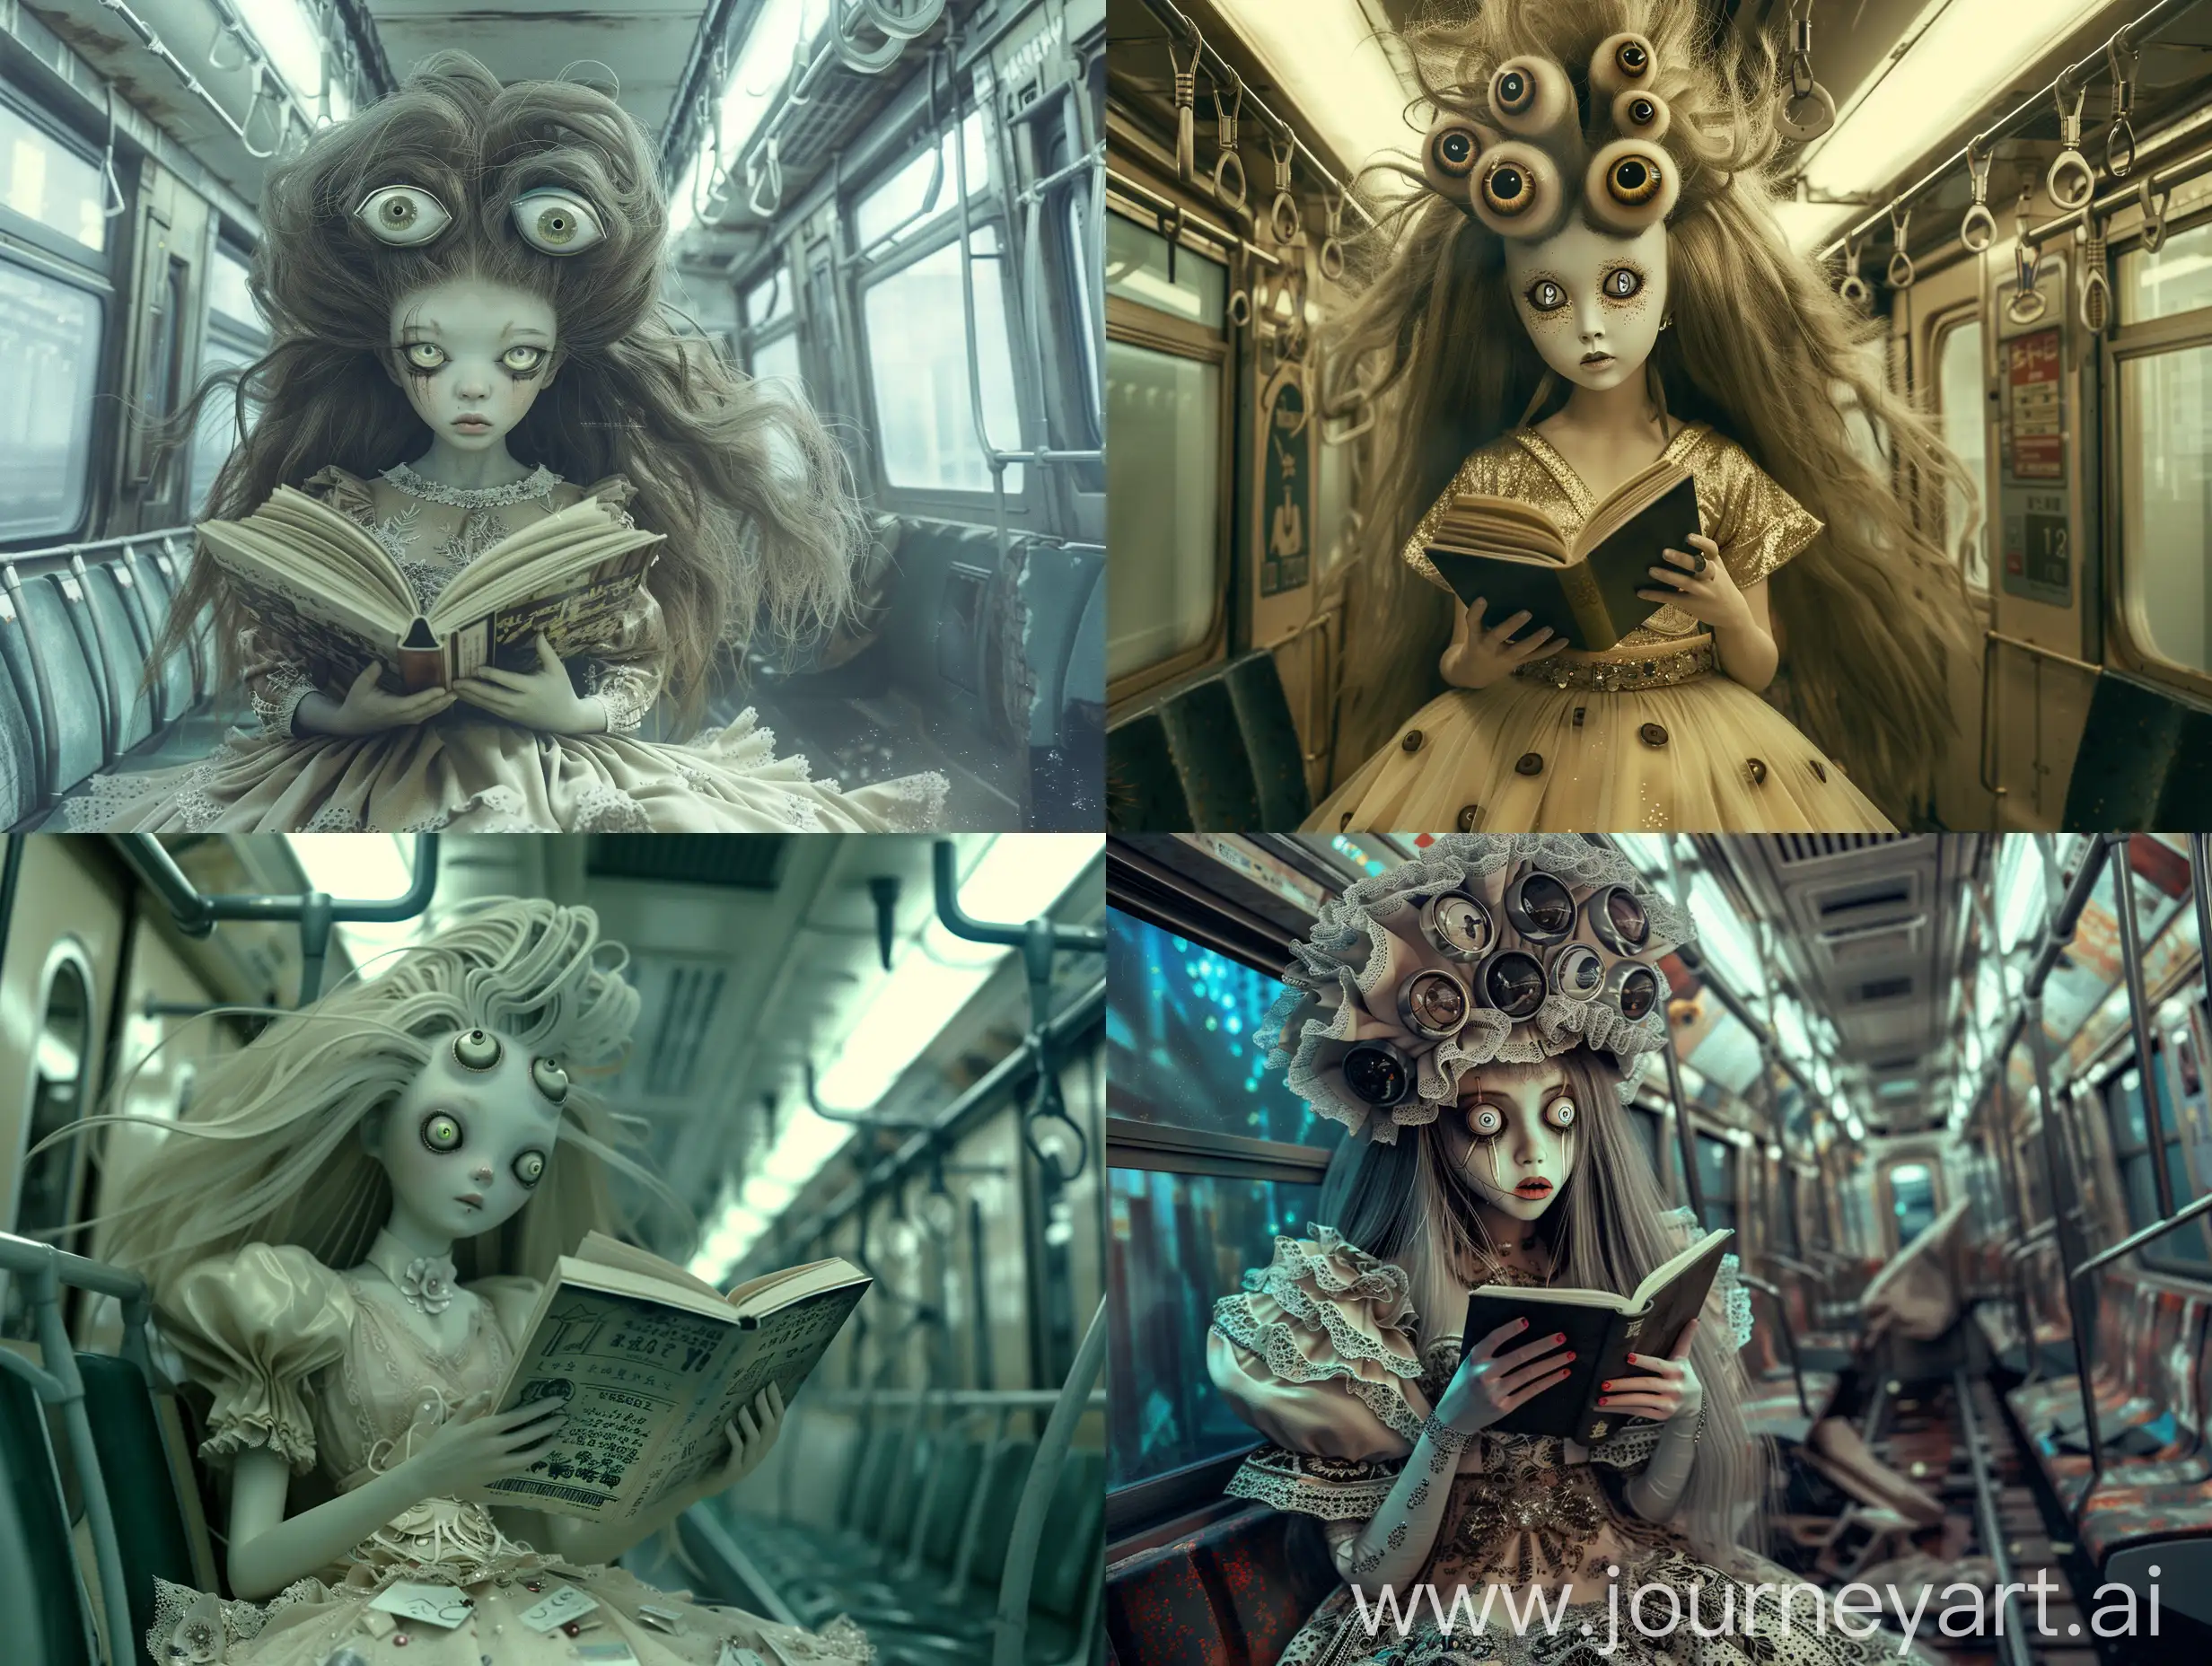 Enigmatic-Yokai-Encounter-in-Tokyo-Subway-Photorealistic-Cinematic-Fantasy